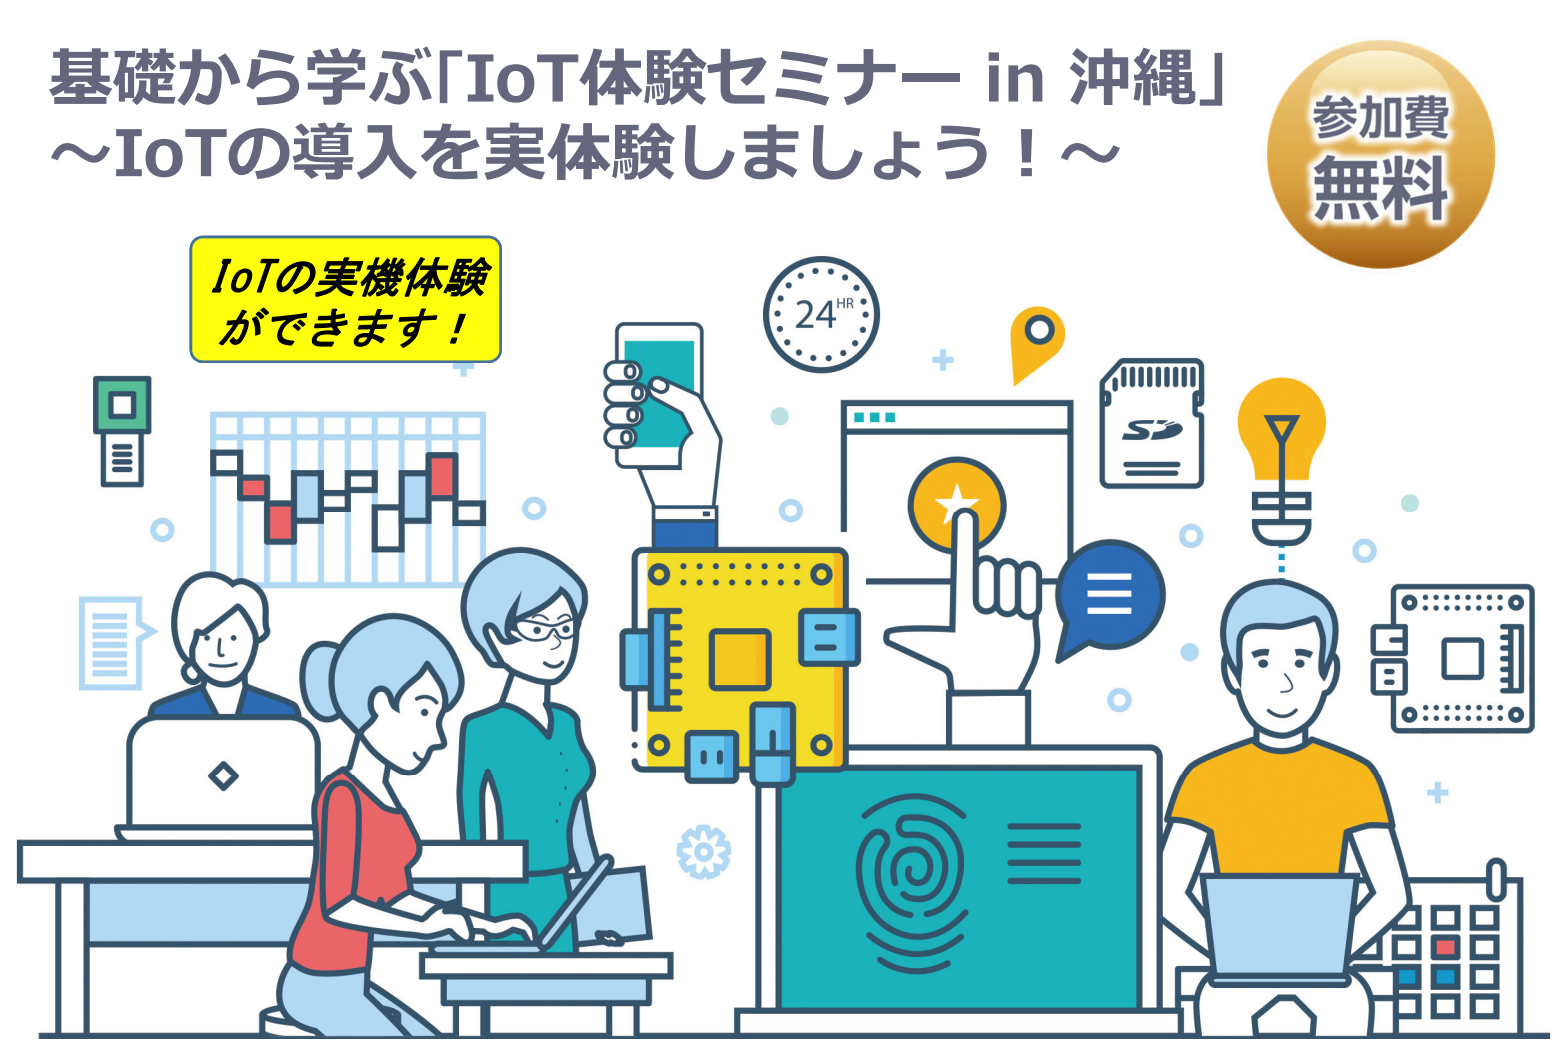 「基礎から学ぶ｢IoT体験セミナー in 沖縄」 ～IoTの導入を実体験しましょう！～」の開催